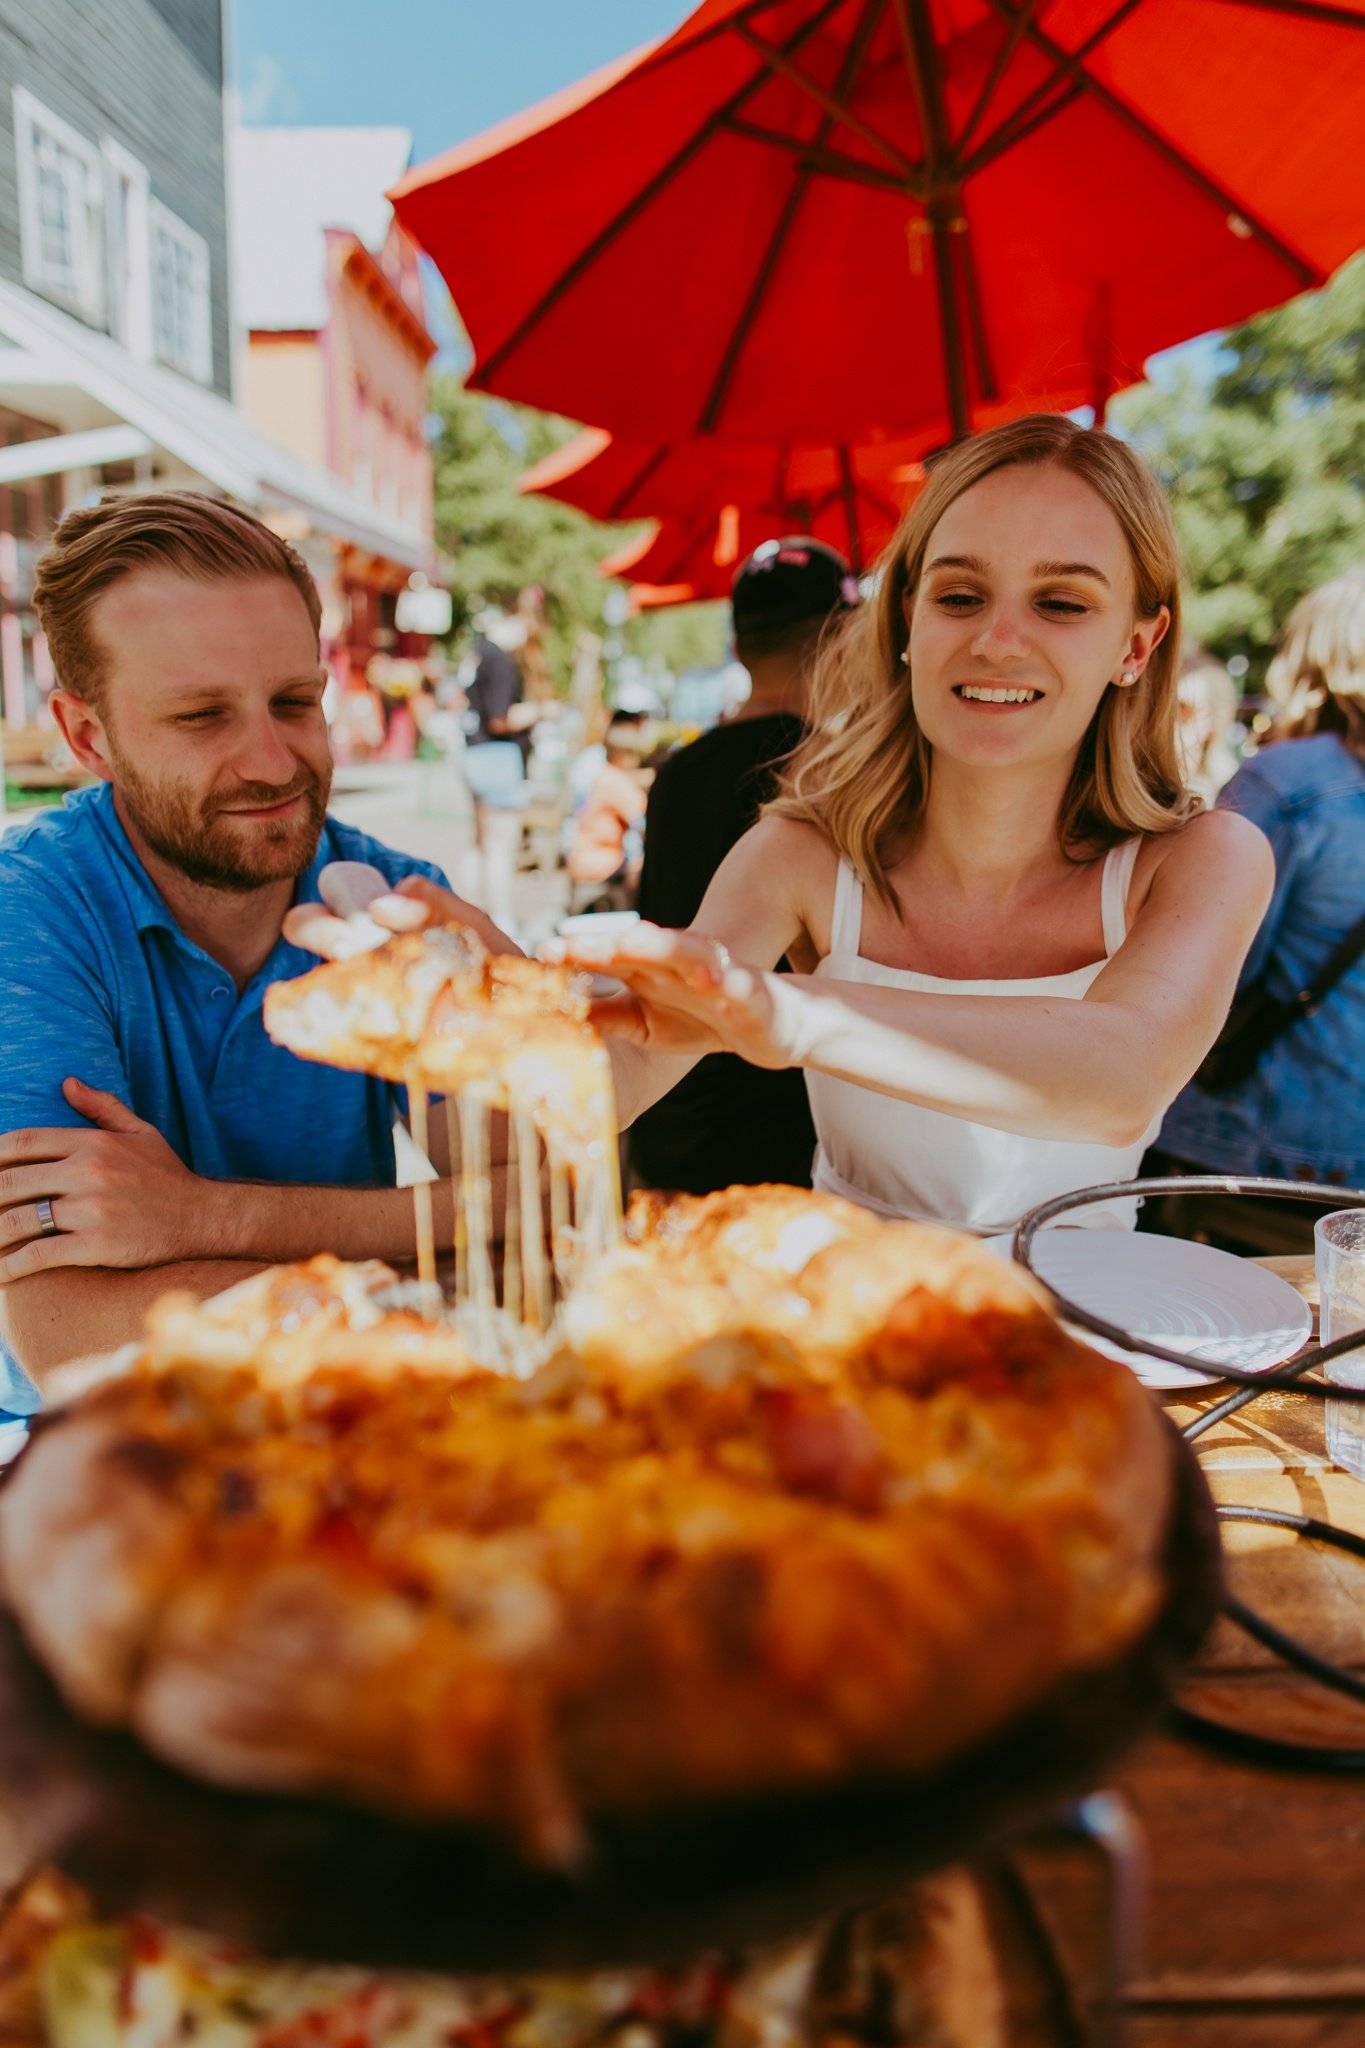 Colorado Pizza at Your Wedding